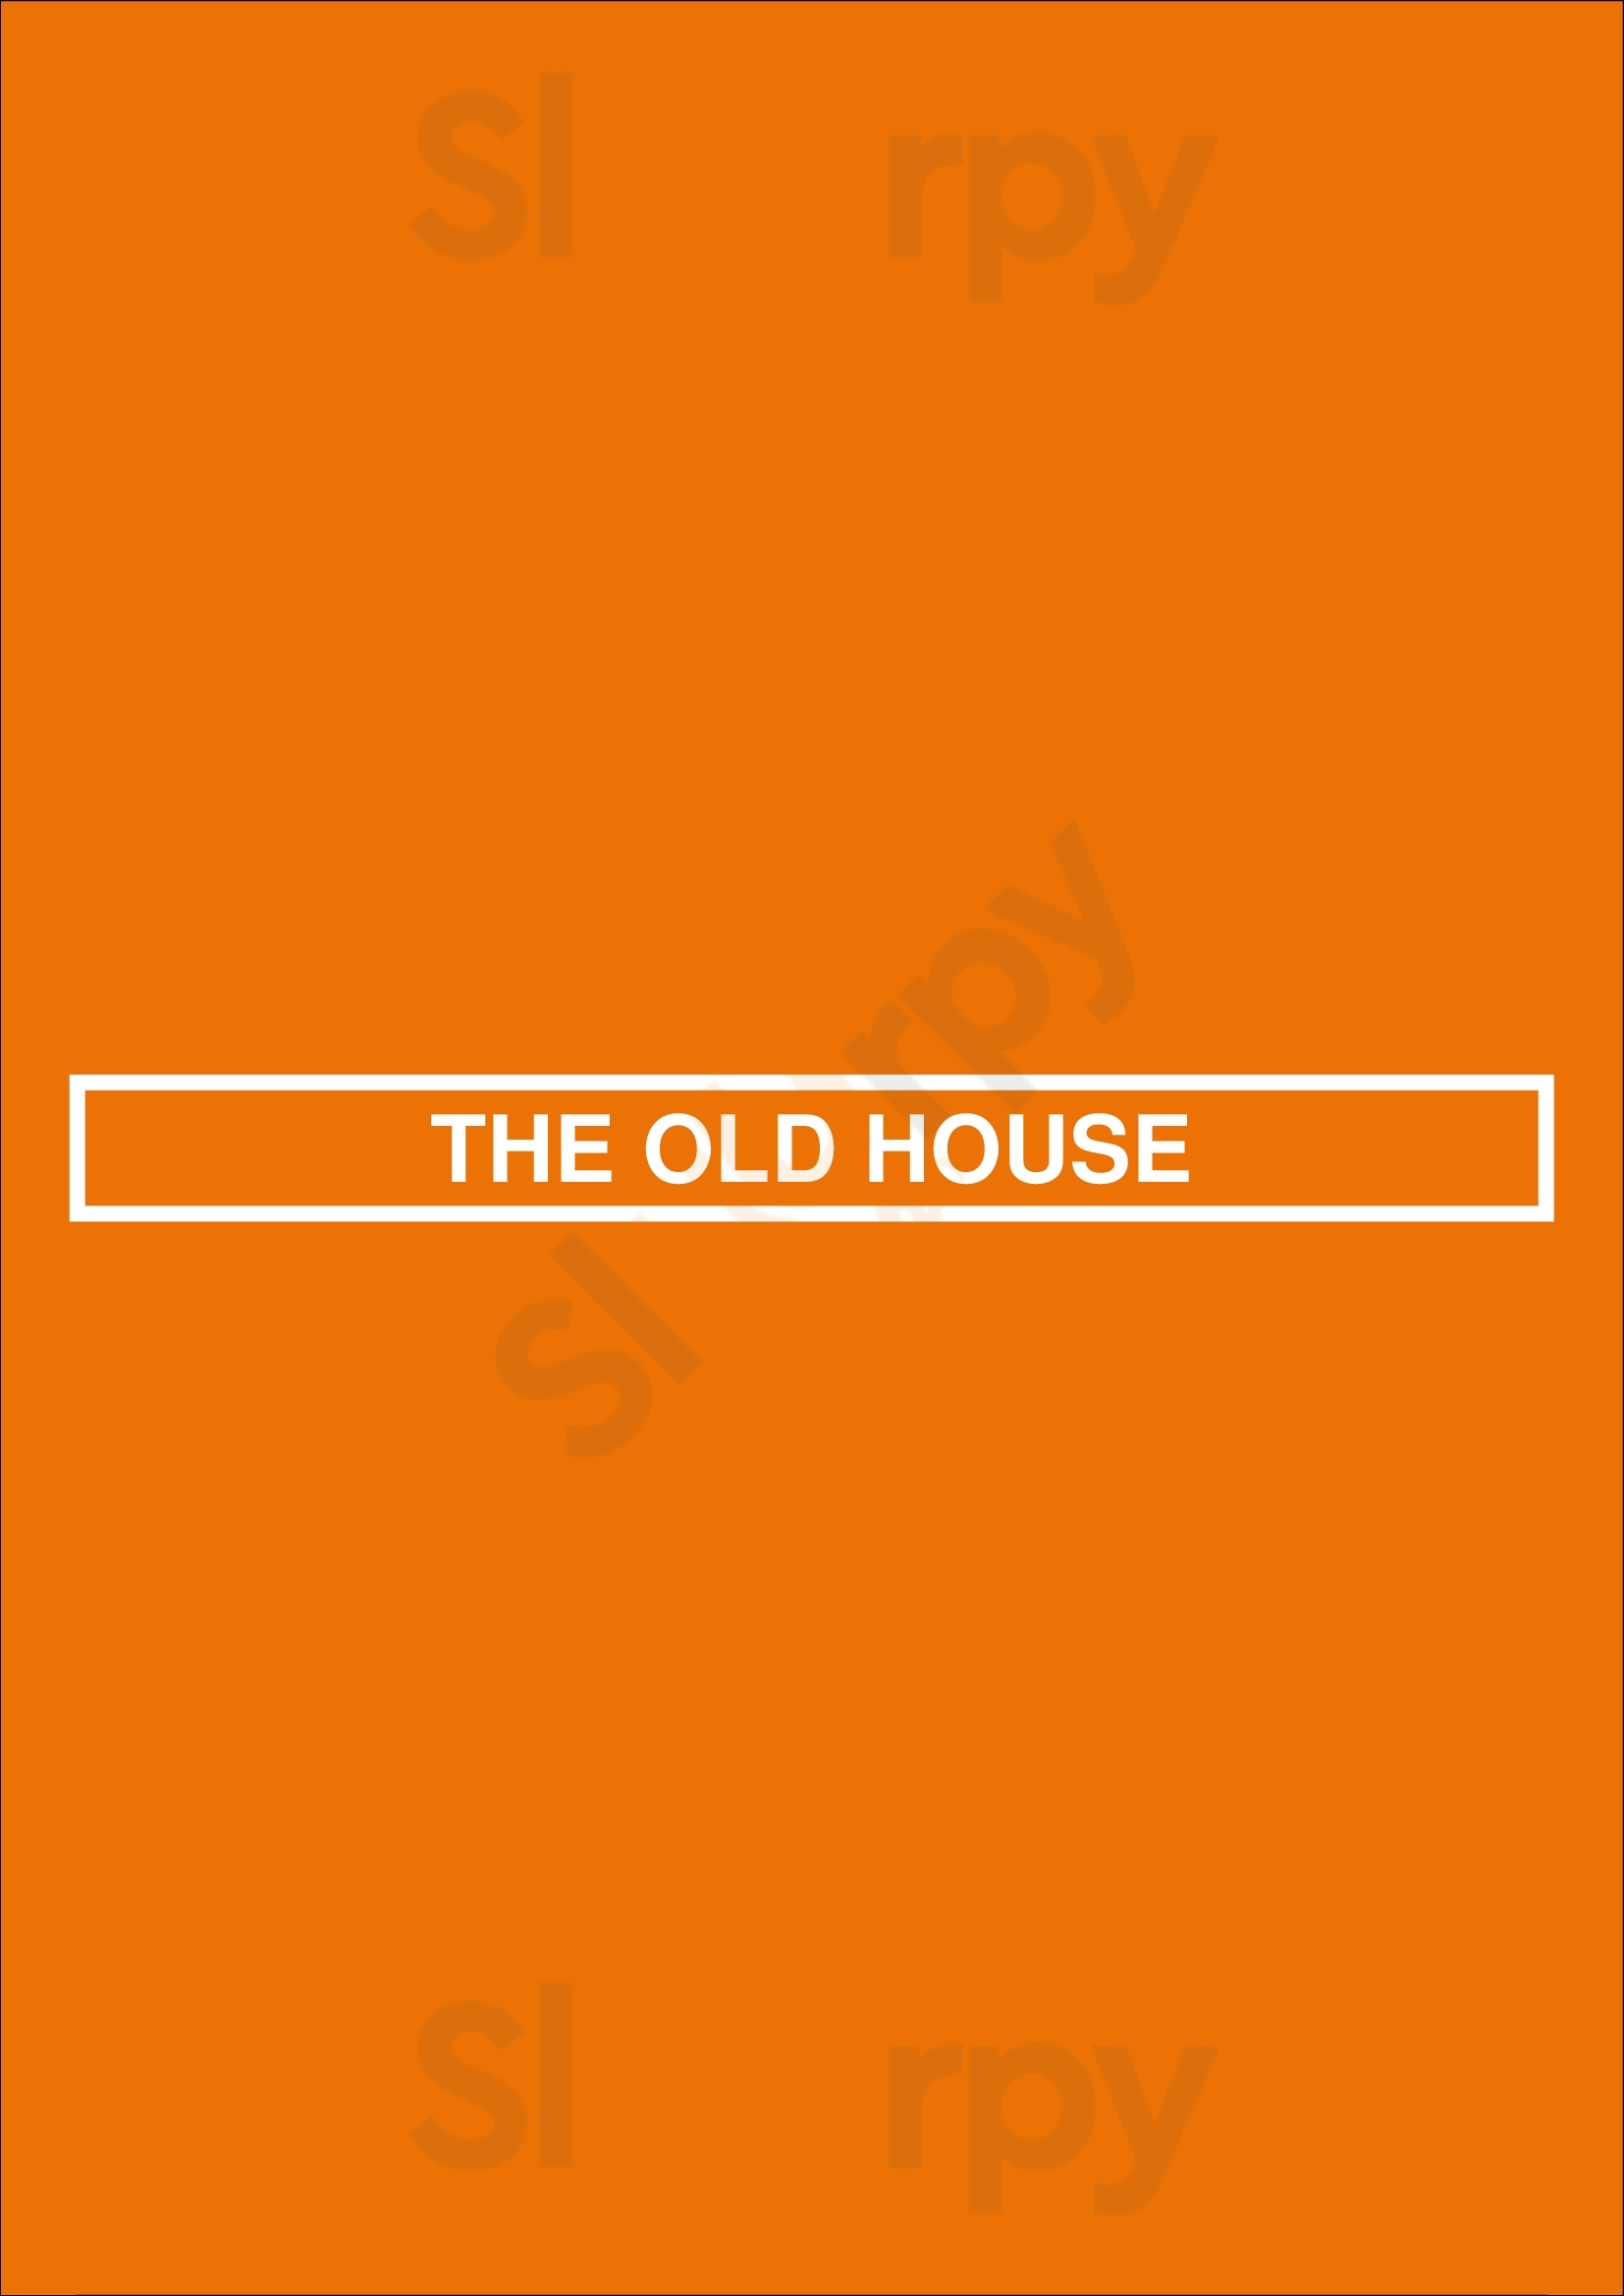 The Old House Lisboa Menu - 1